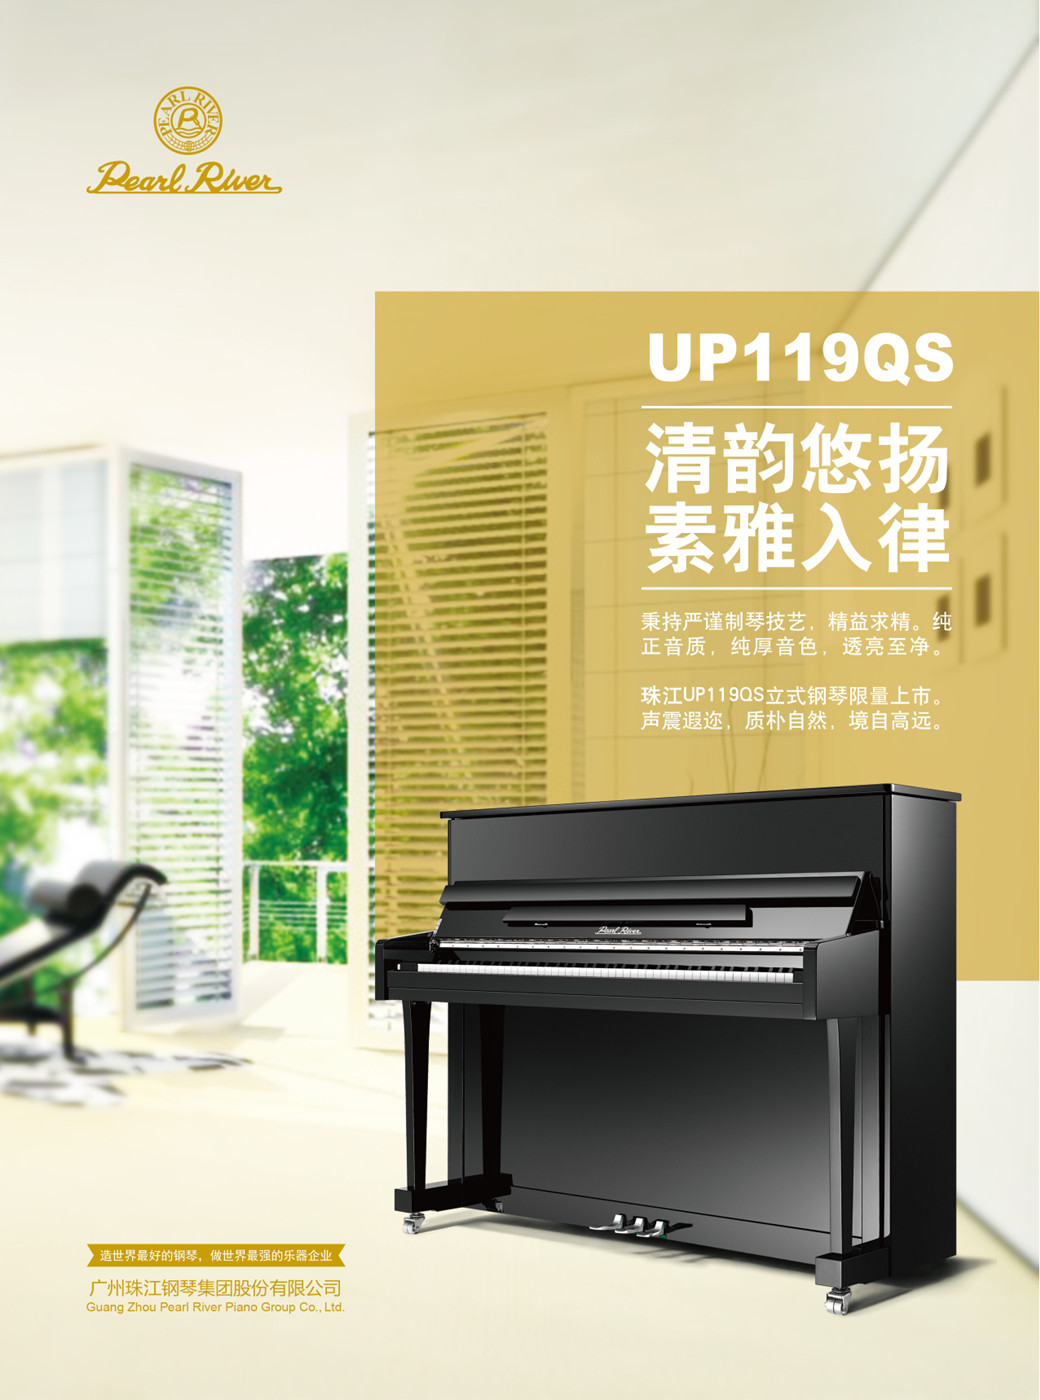 珠江钢琴型号119QS